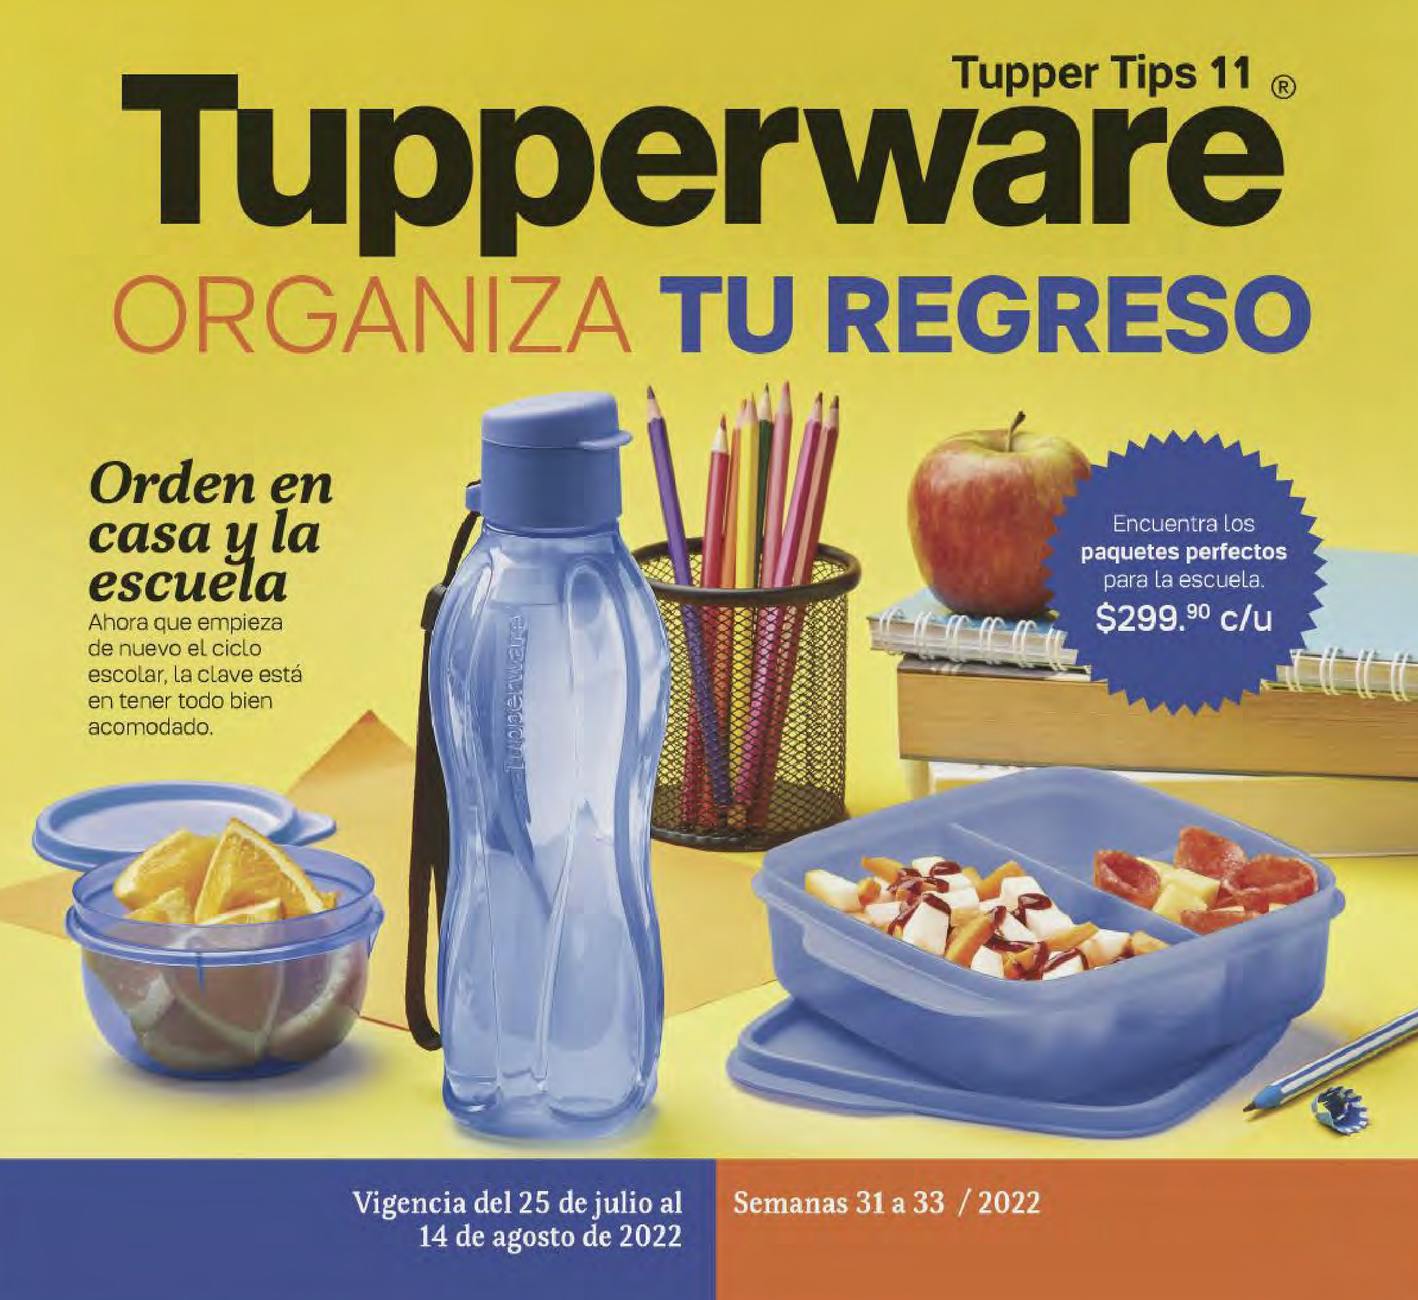 Catálogo Tupperware Tips 11 2022 México